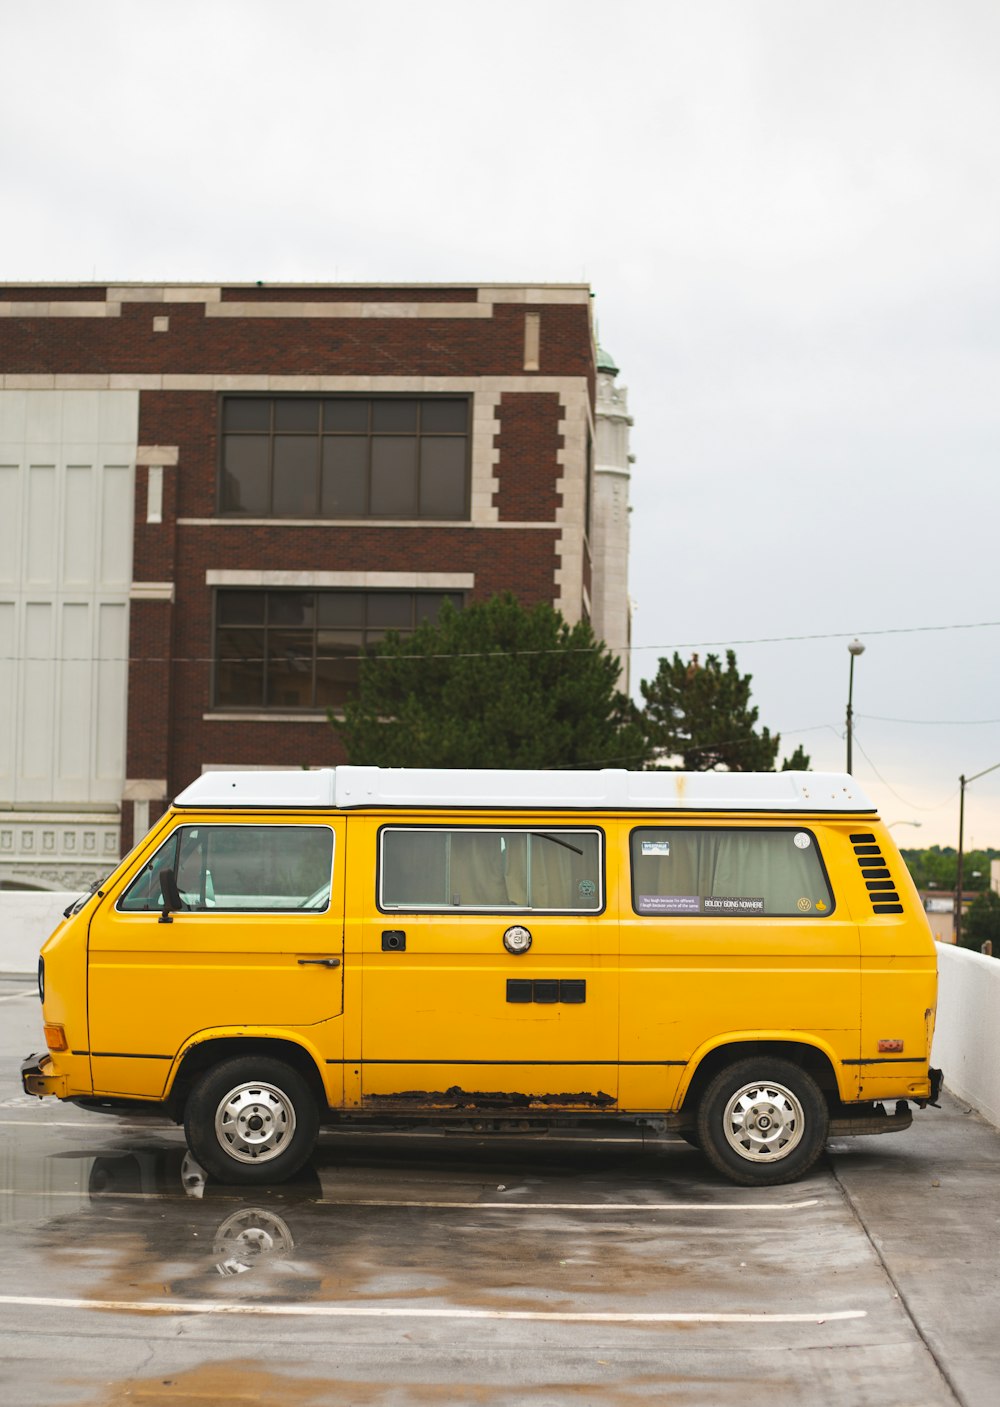 yellow van